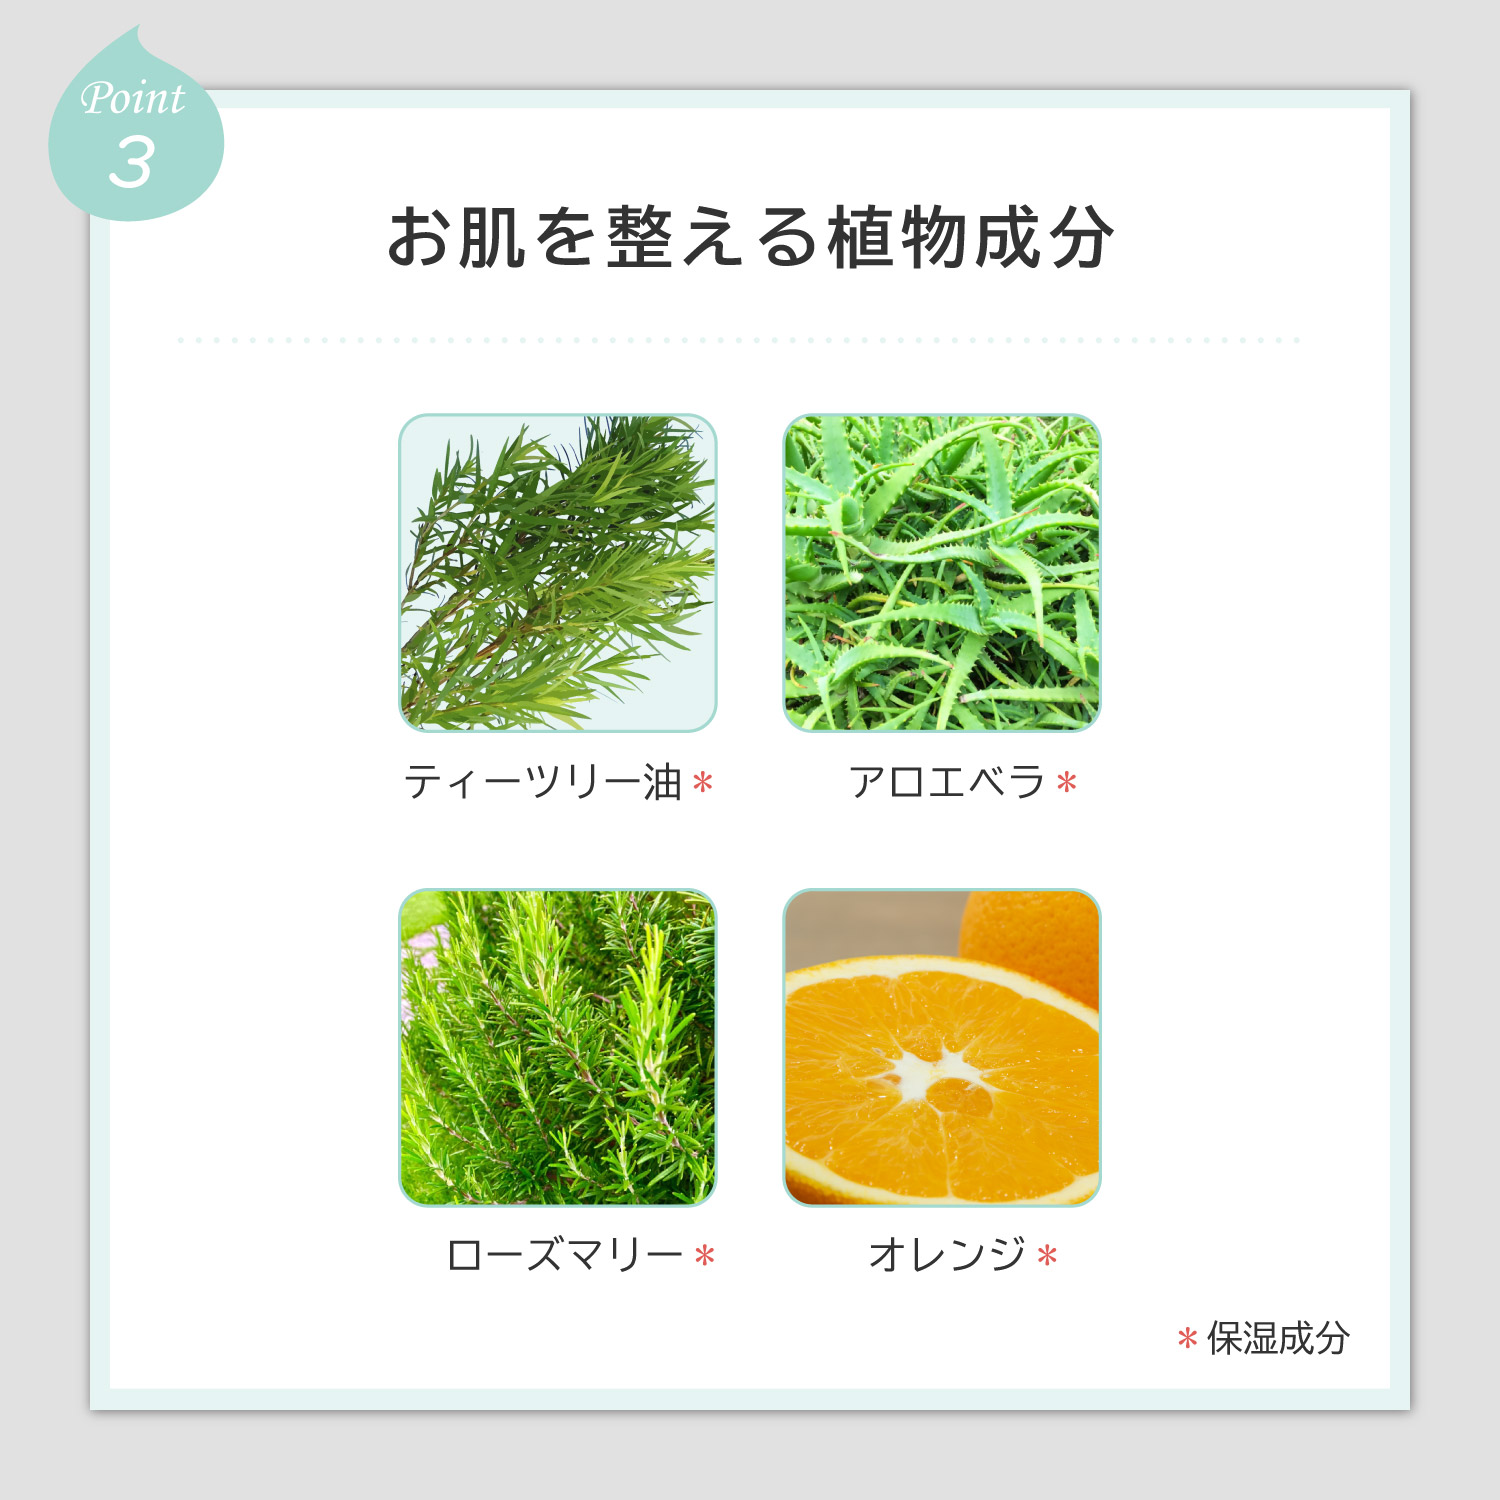 【Point-3】お肌を整える植物成分（ティーツリー油、アロエベラ、ローズマリー、オレンジ）